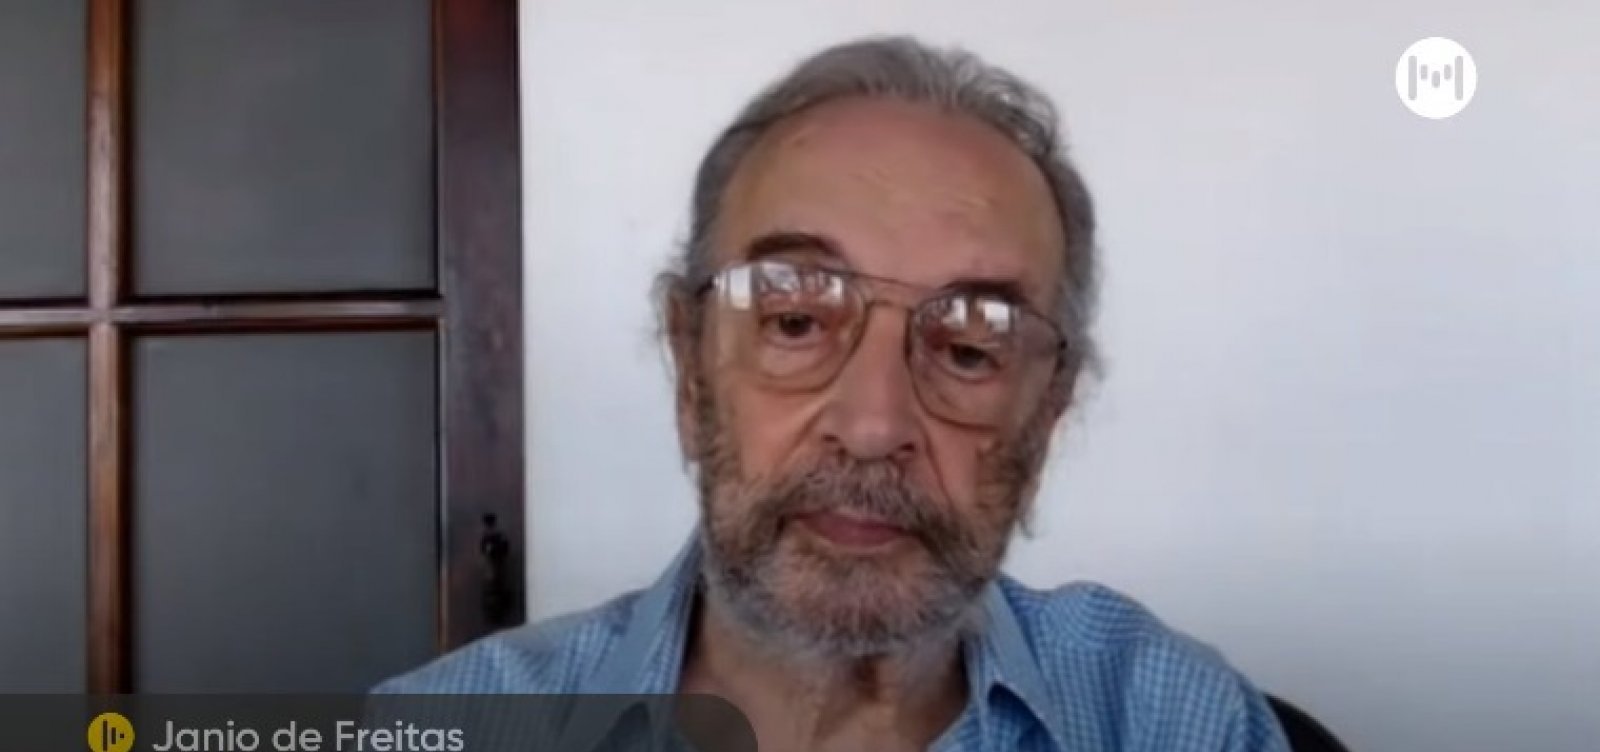 Janio de Freitas critica medida de desoneração da folha de pagamento: "Desoneração é imoral"